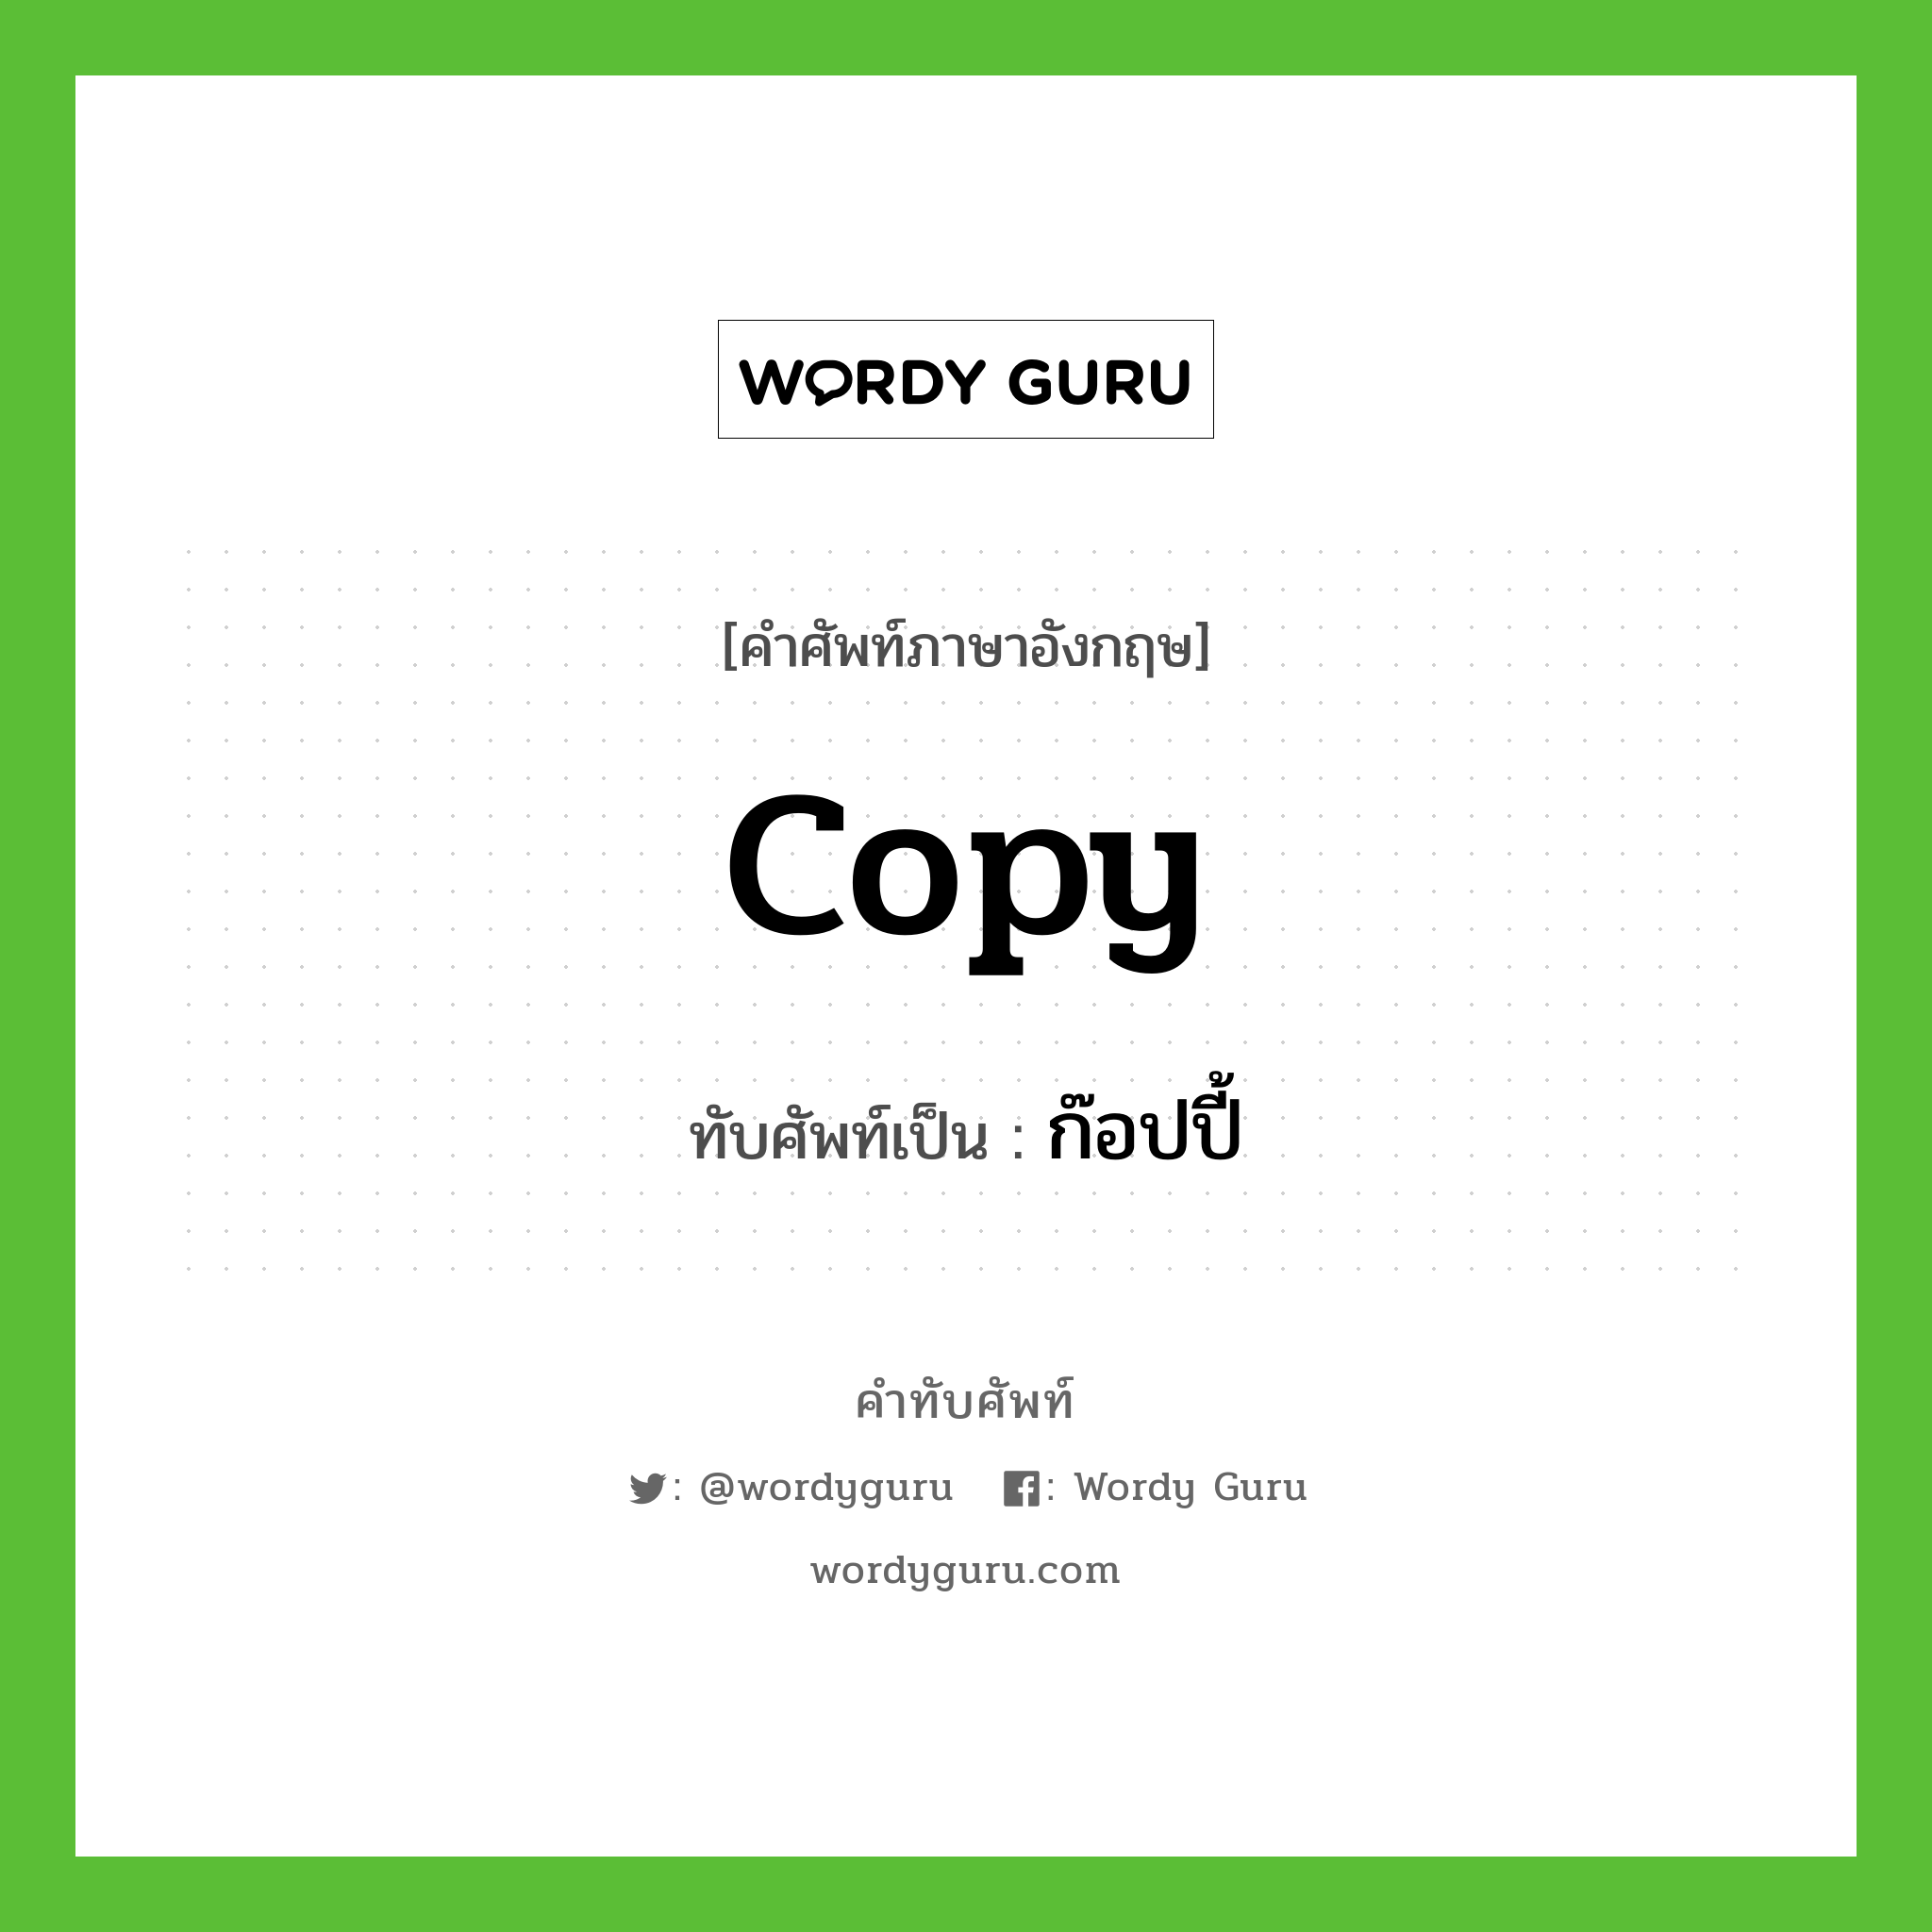 copy เขียนเป็นคำไทยว่าอะไร?, คำศัพท์ภาษาอังกฤษ copy ทับศัพท์เป็น ก๊อปปี้